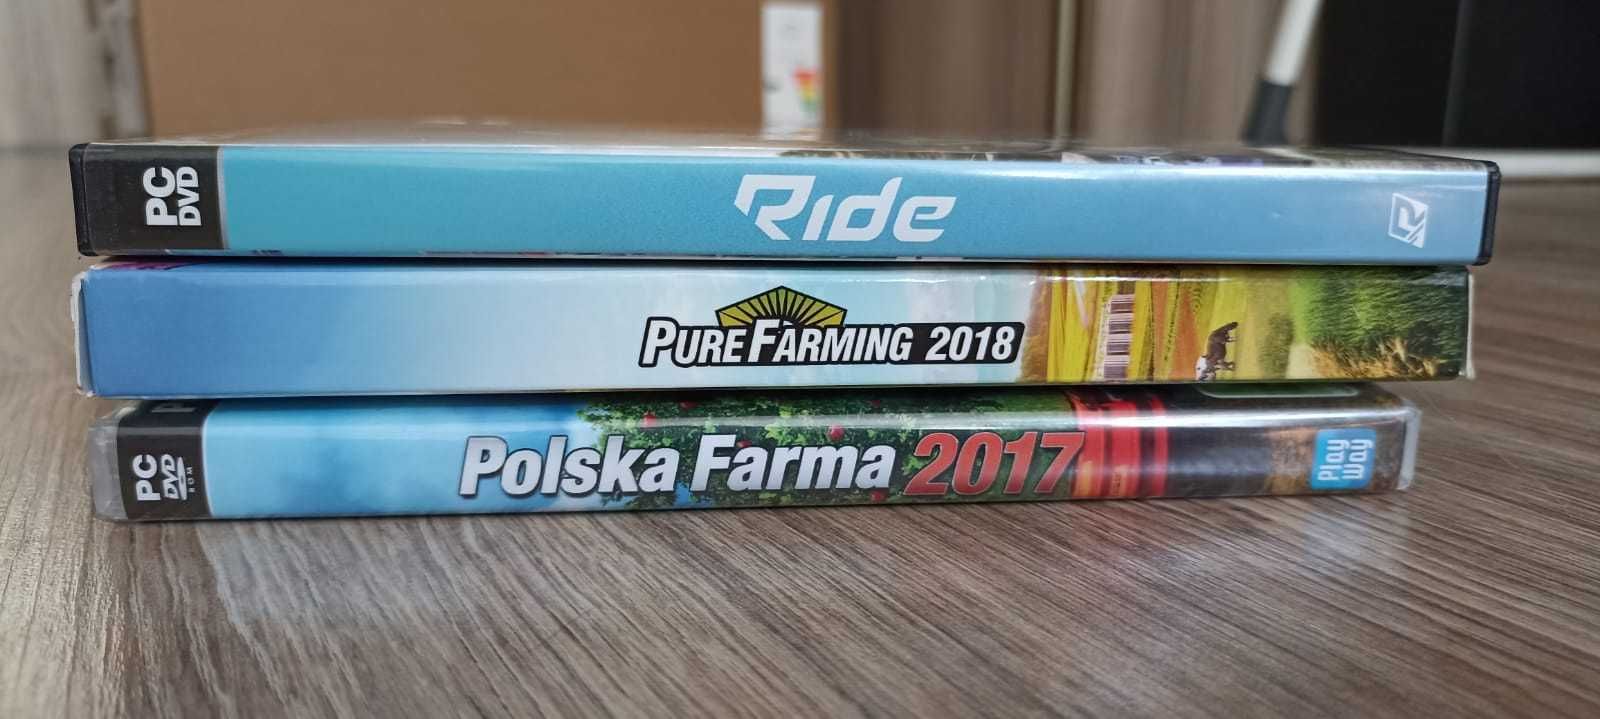 Gry PC polska farma 2017 pure farming 2018 Ride